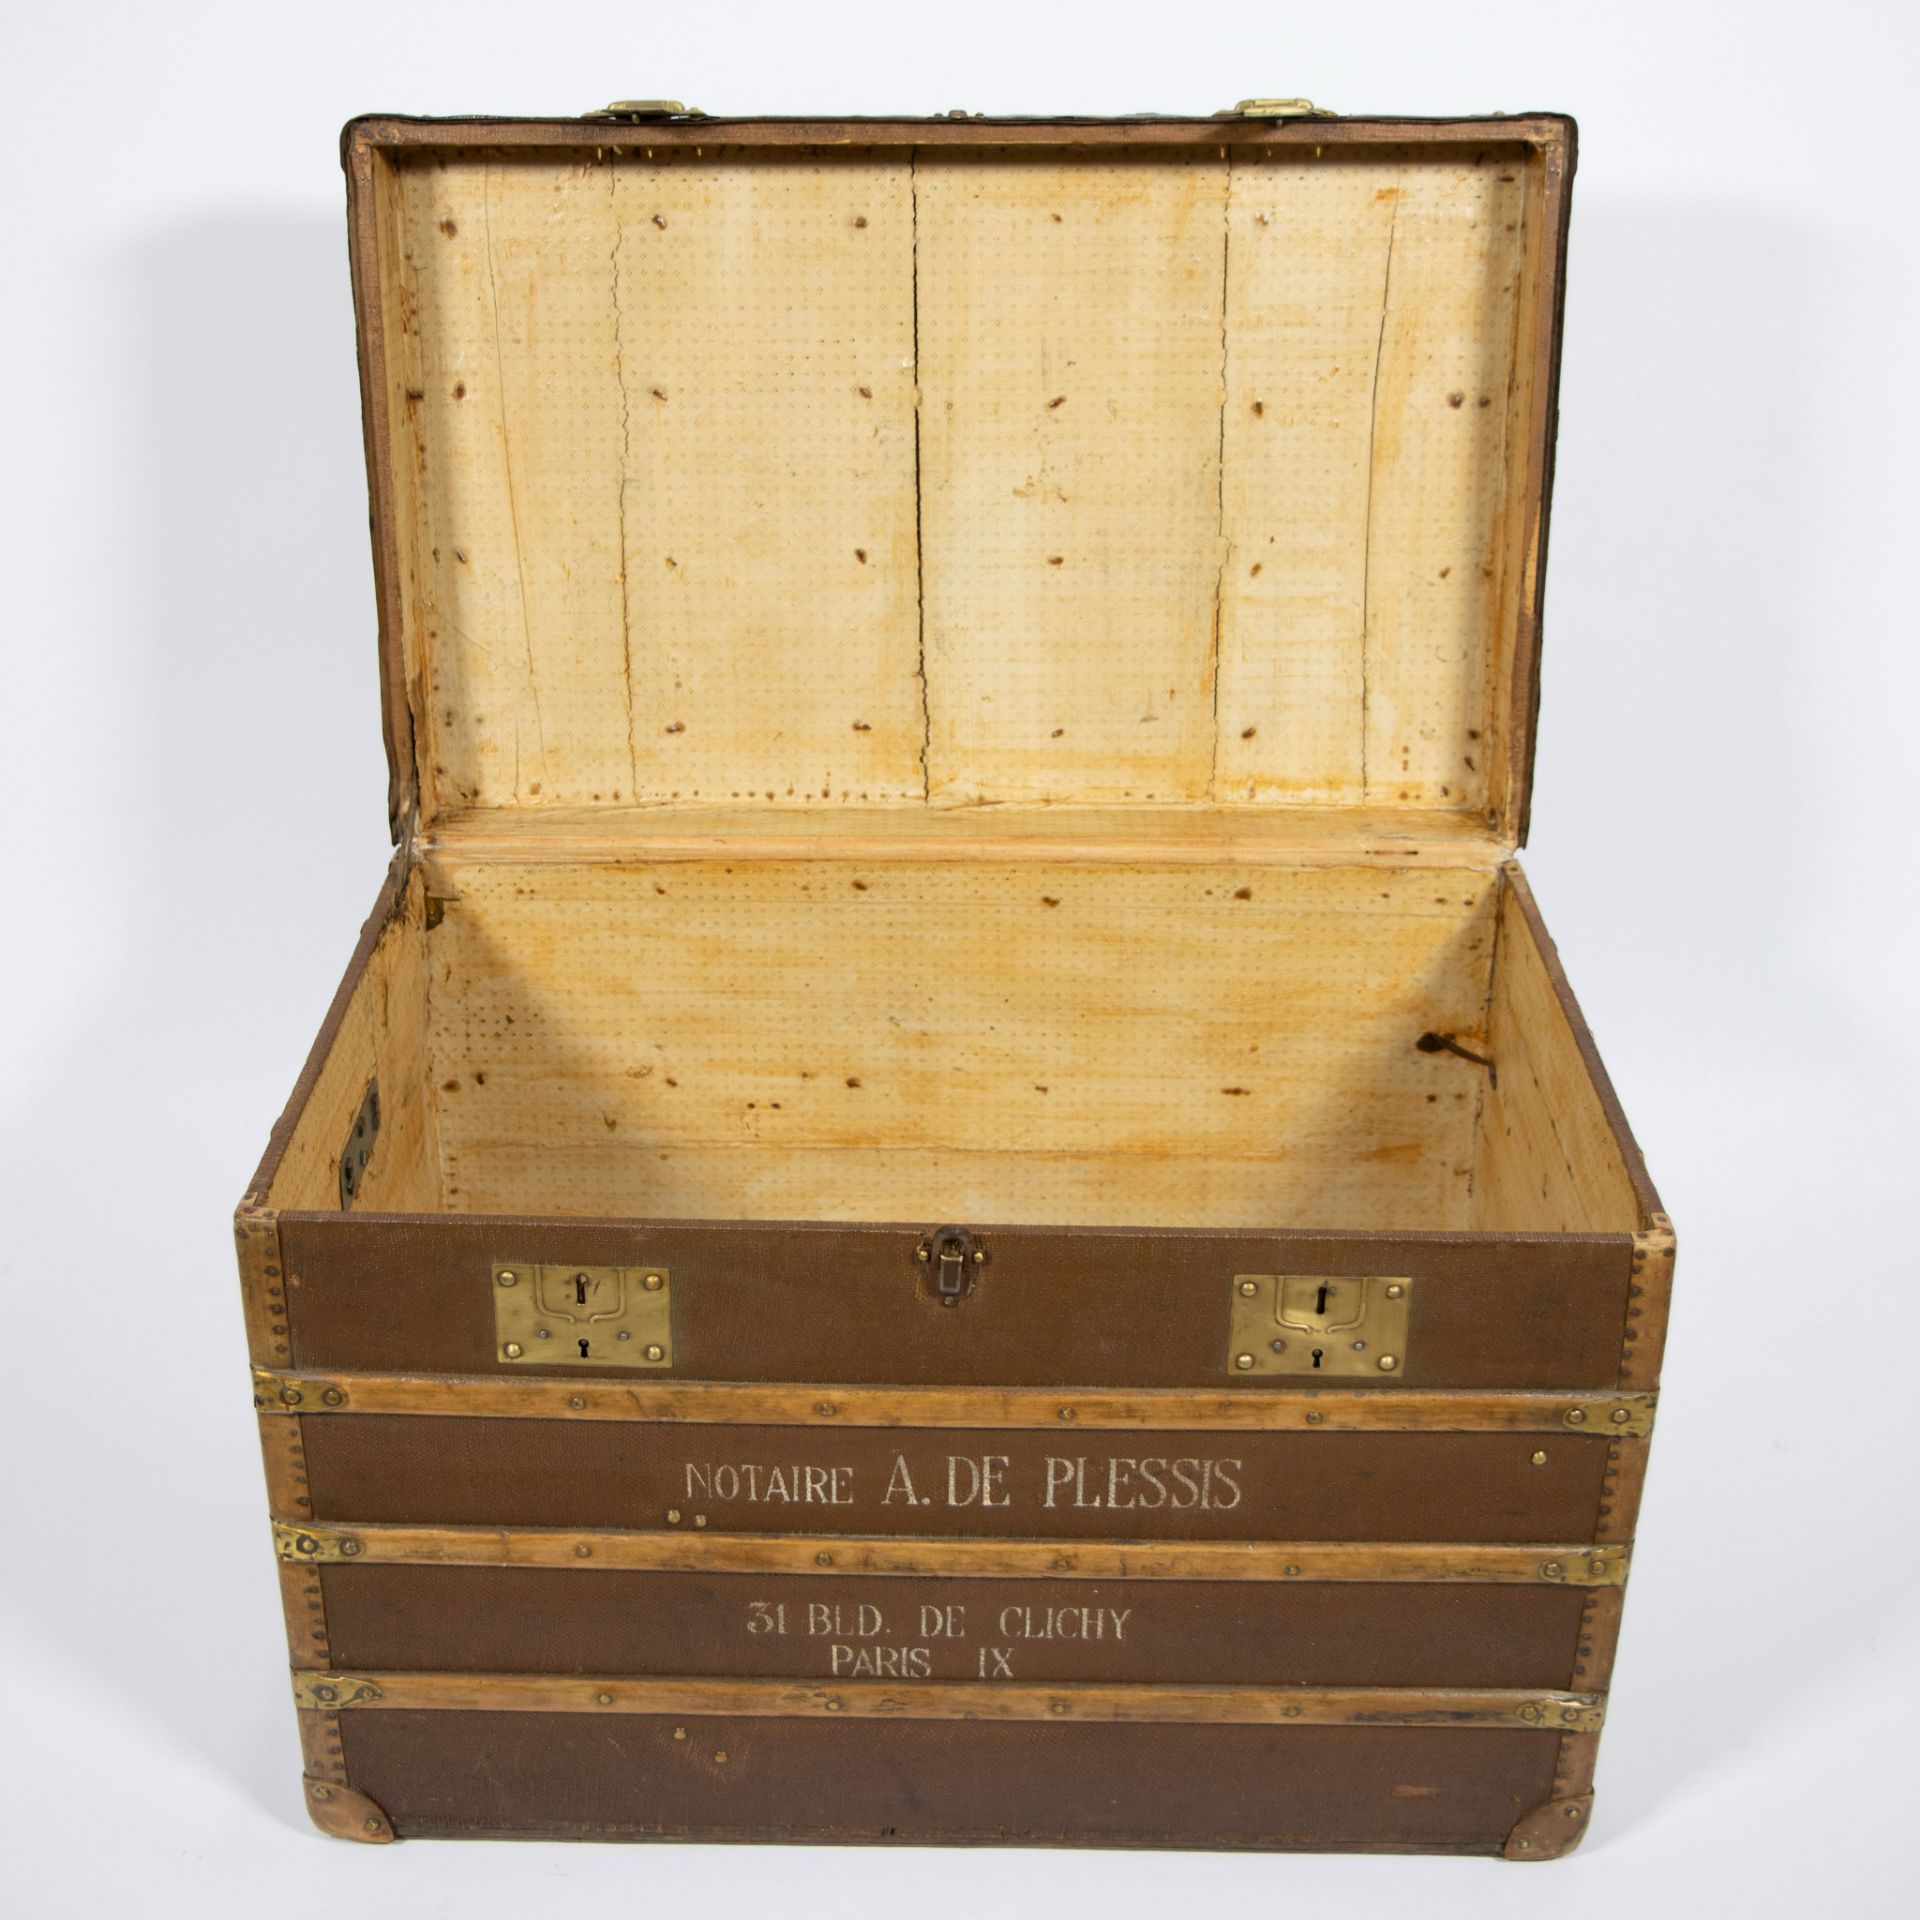 Large 19th century travel case Notaire A de Plessis, 31 BLD de Clichy Paris - Image 3 of 3